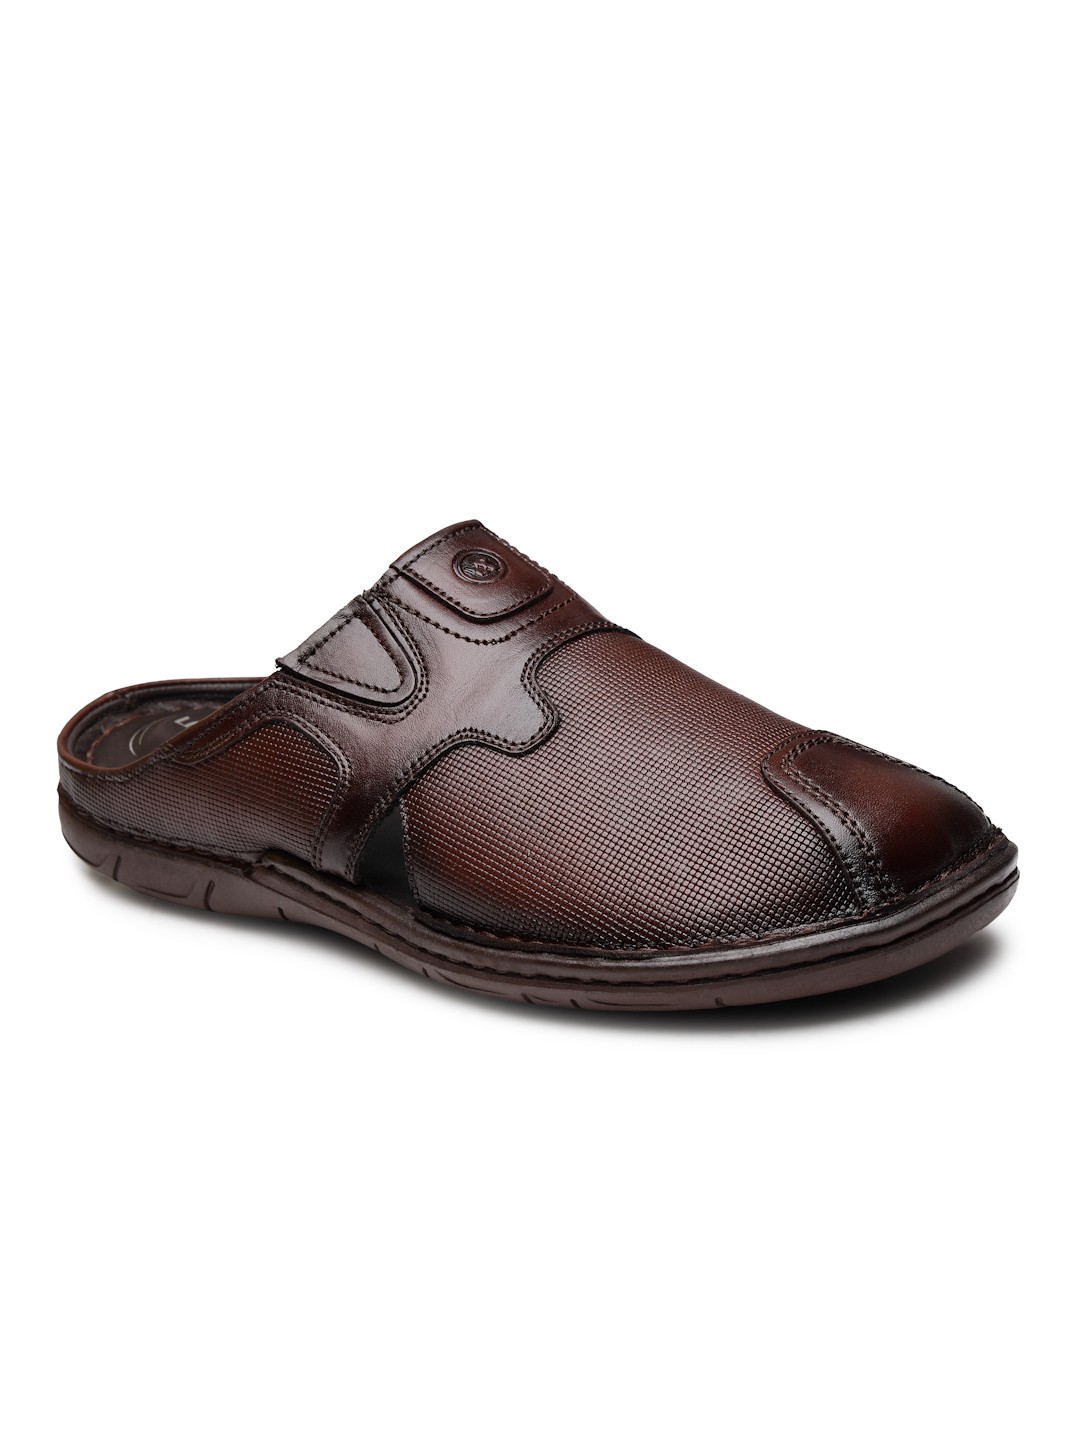 Buy Von Wellx Germany Comfort Men's Brown Slippers Arlo Online in Meerut